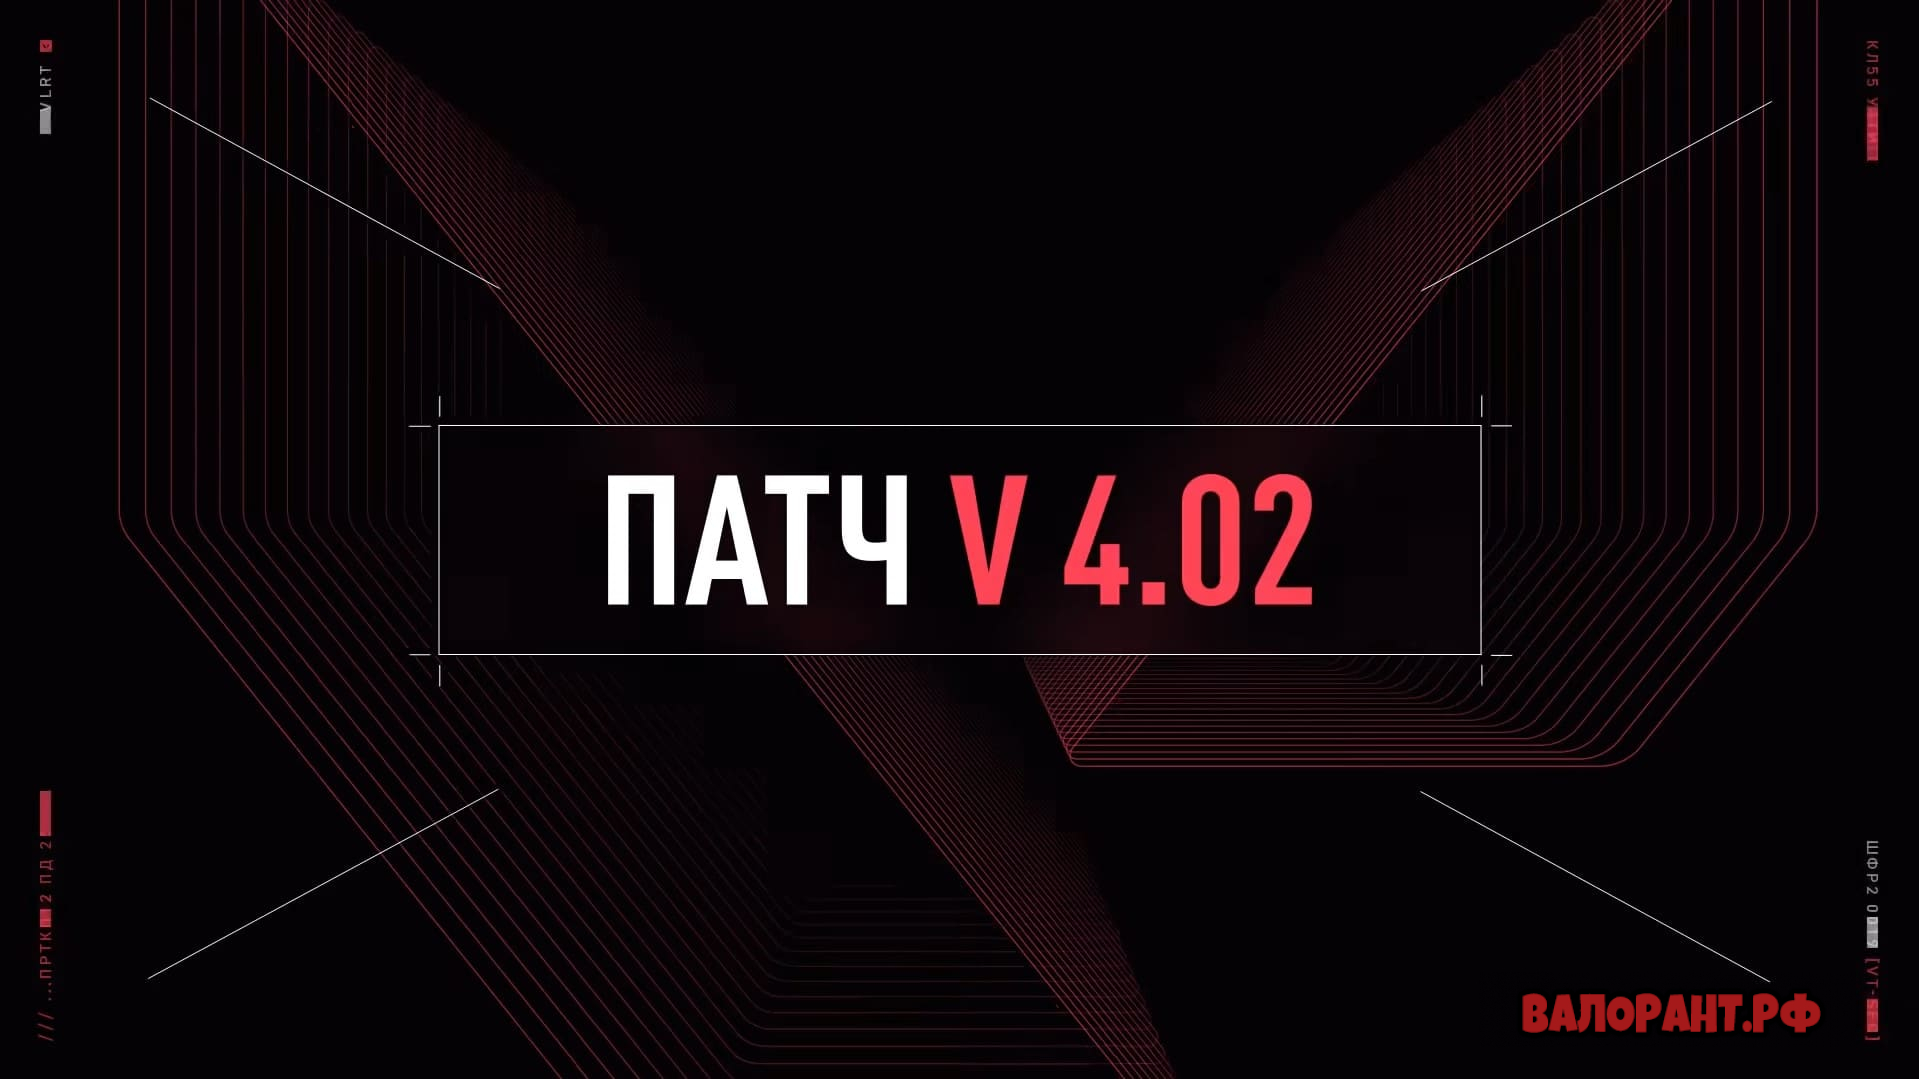 Spisok izmenenij Valorant patch 4.02 - Список изменений Валорант - патч 4.02